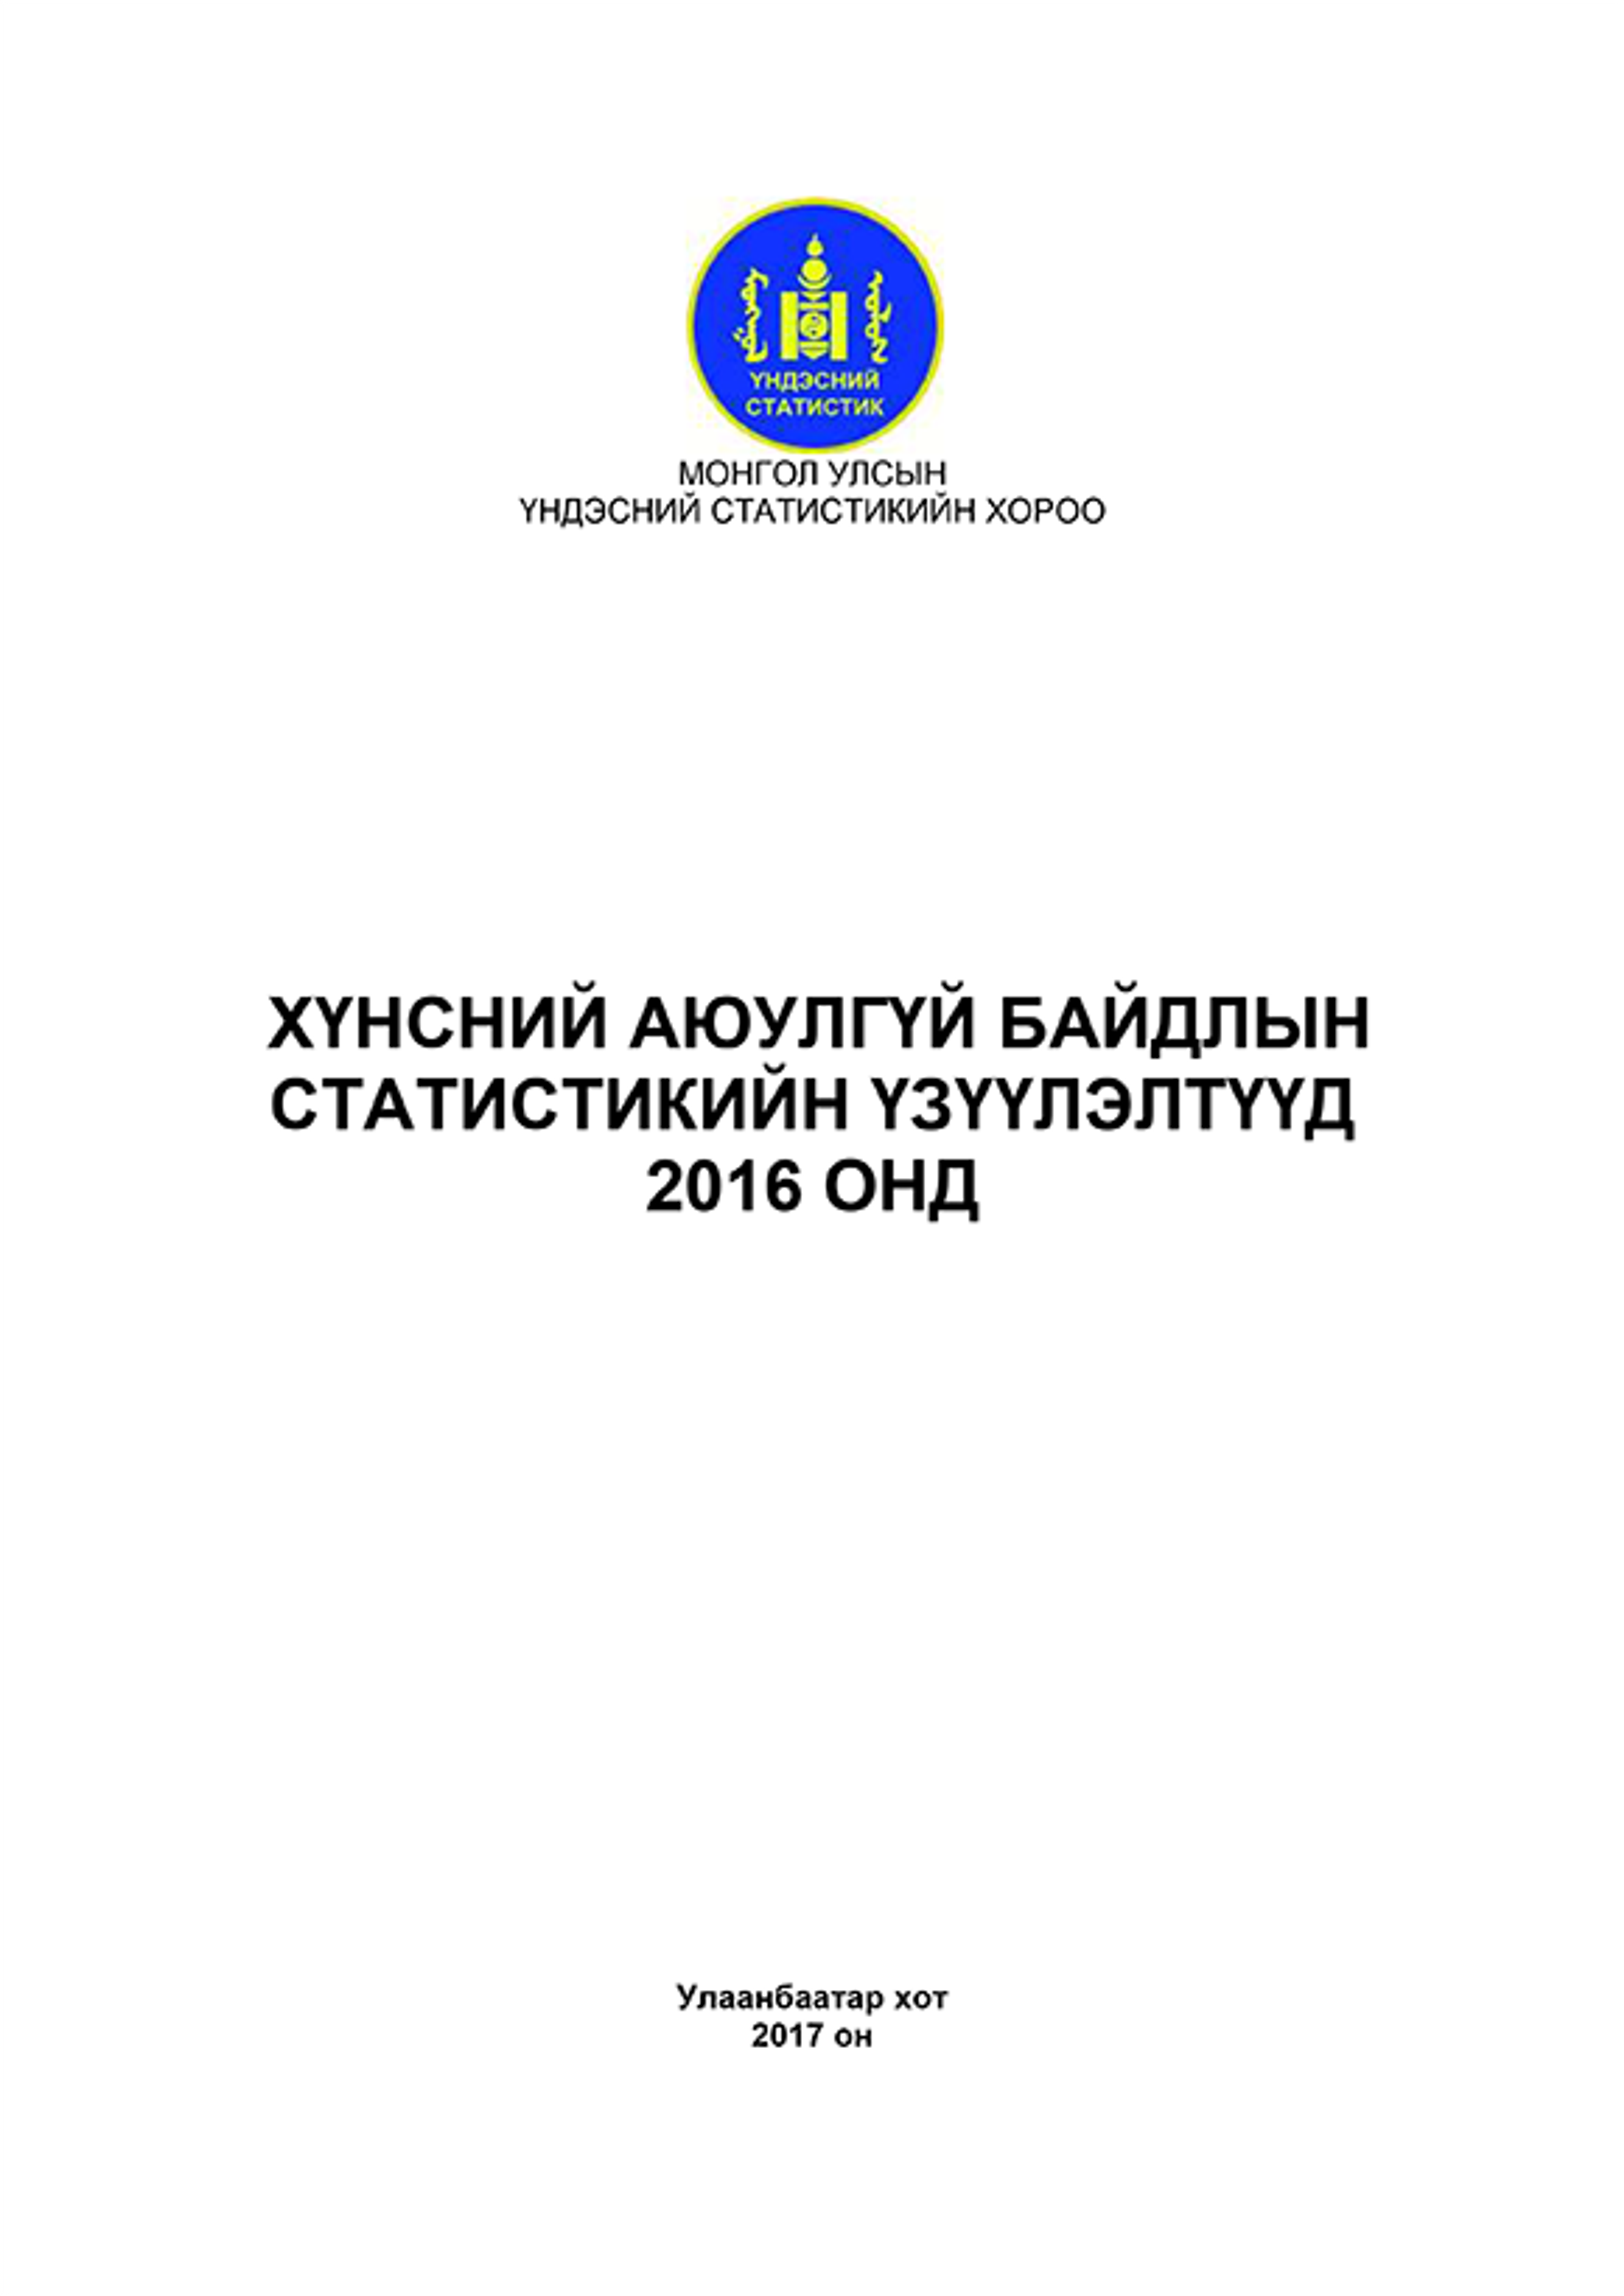 Хүнсний аюулгүй байдлын статистик үзүүлэлт-2016 Монгол